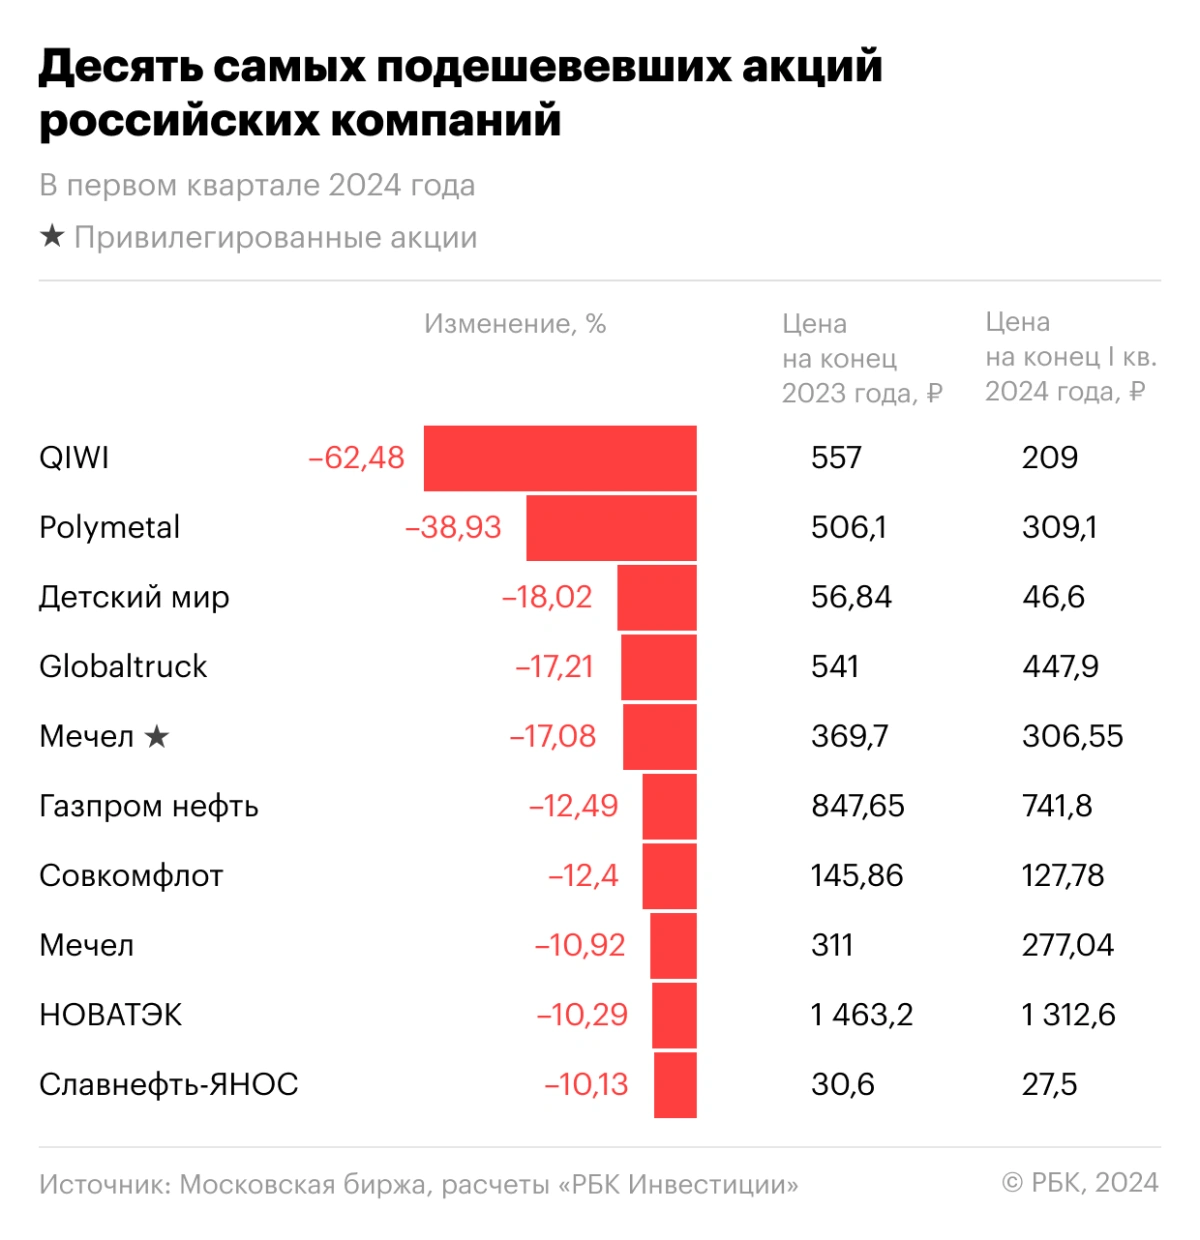 <p>Десять самых подешевевших в первом квартале 2024 года акций российских компаний</p>